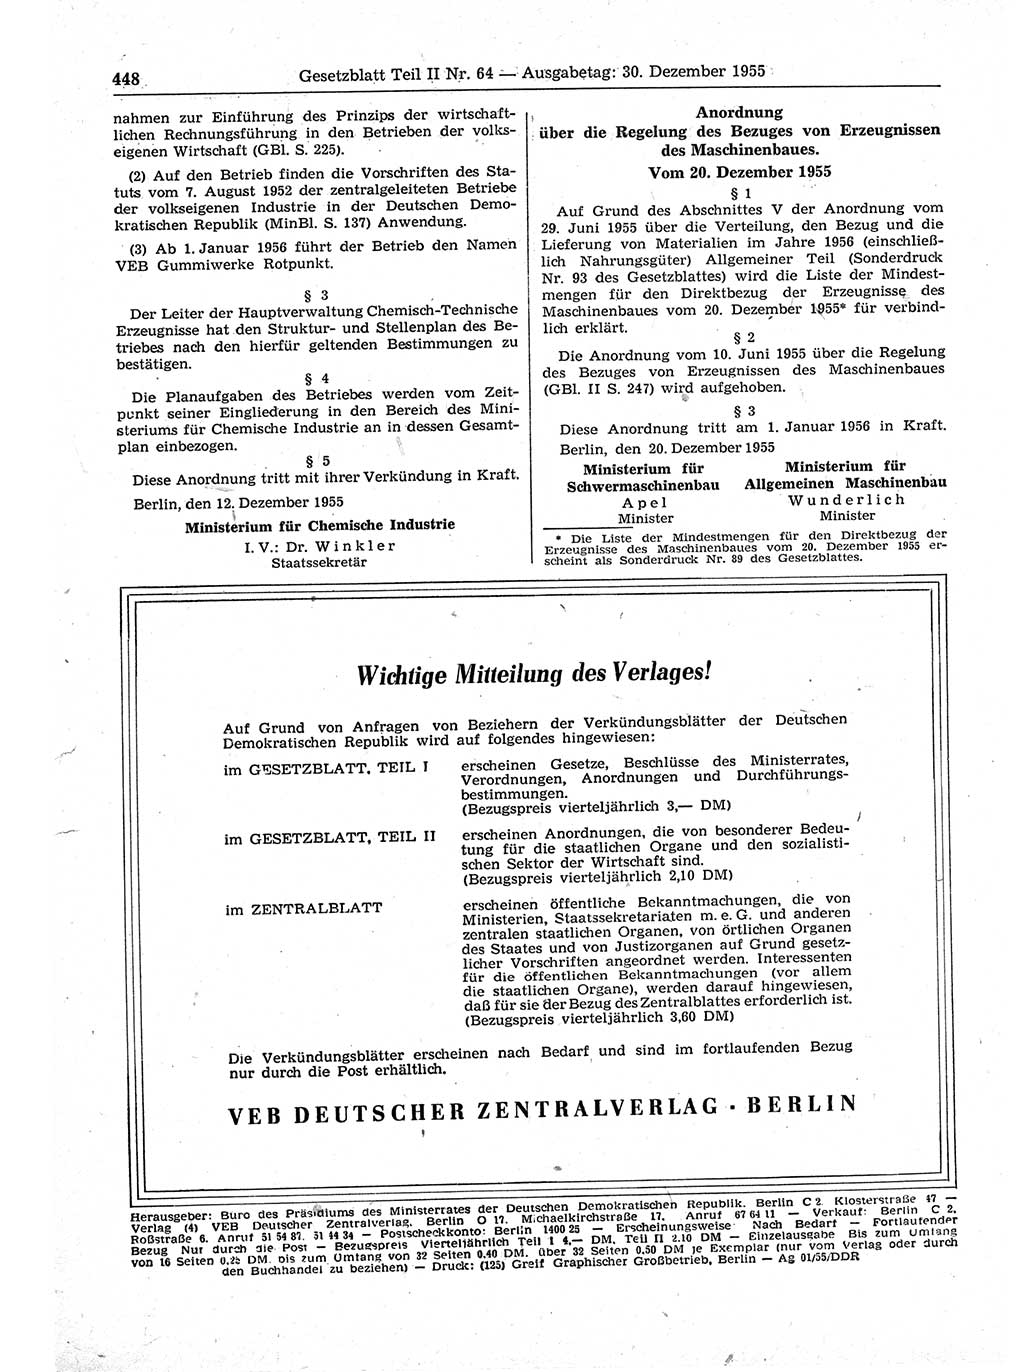 Gesetzblatt (GBl.) der Deutschen Demokratischen Republik (DDR) Teil ⅠⅠ 1955, Seite 448 (GBl. DDR ⅠⅠ 1955, S. 448)